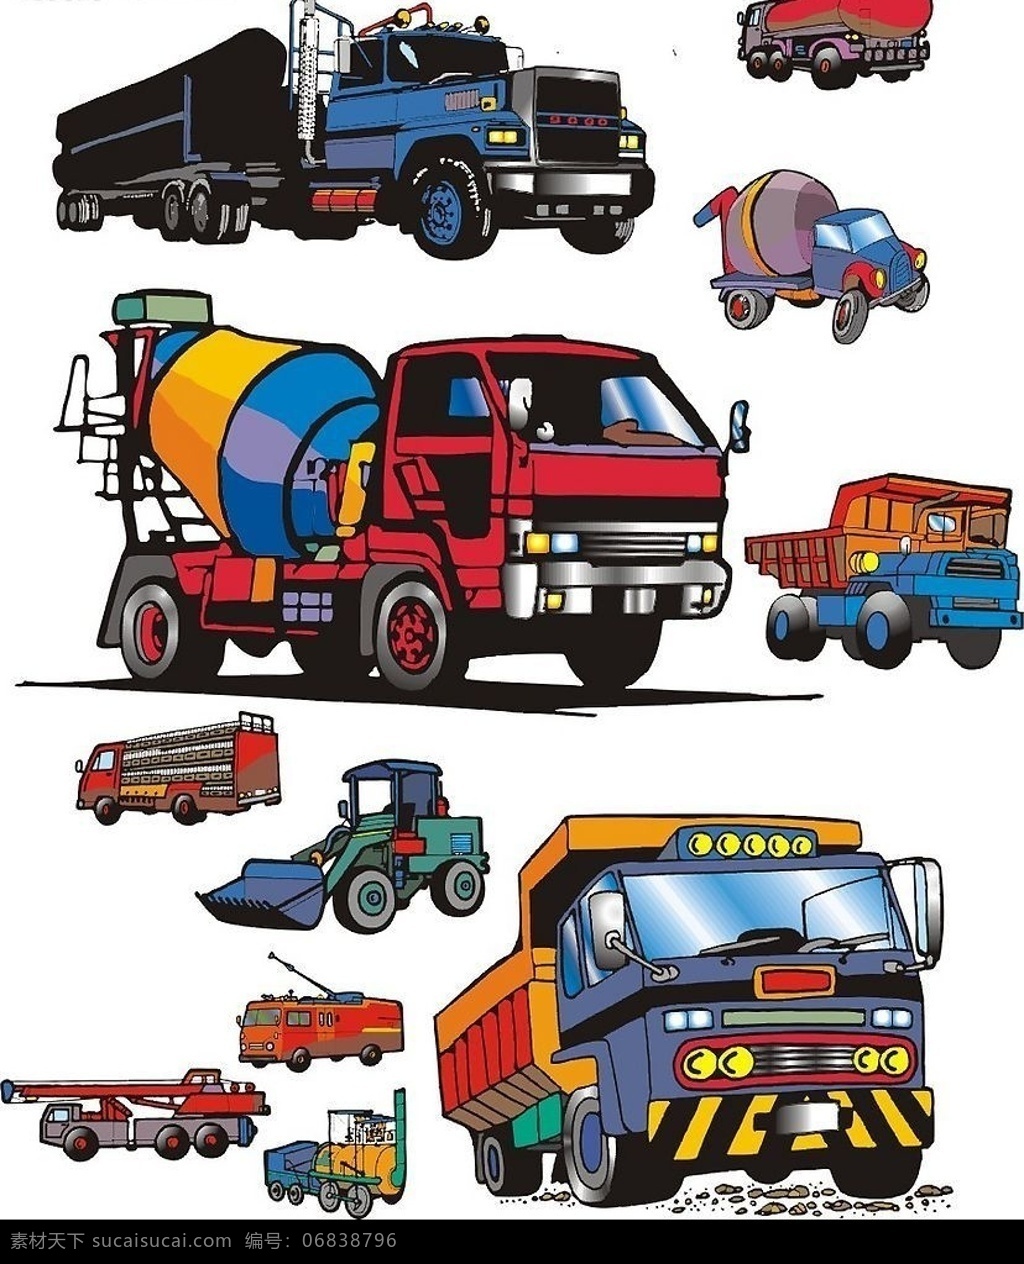 车辆 卡车 拖拉机 吊车 油车 电车 散装水泥车 车 货车 其他矢量 矢量素材 矢量图库